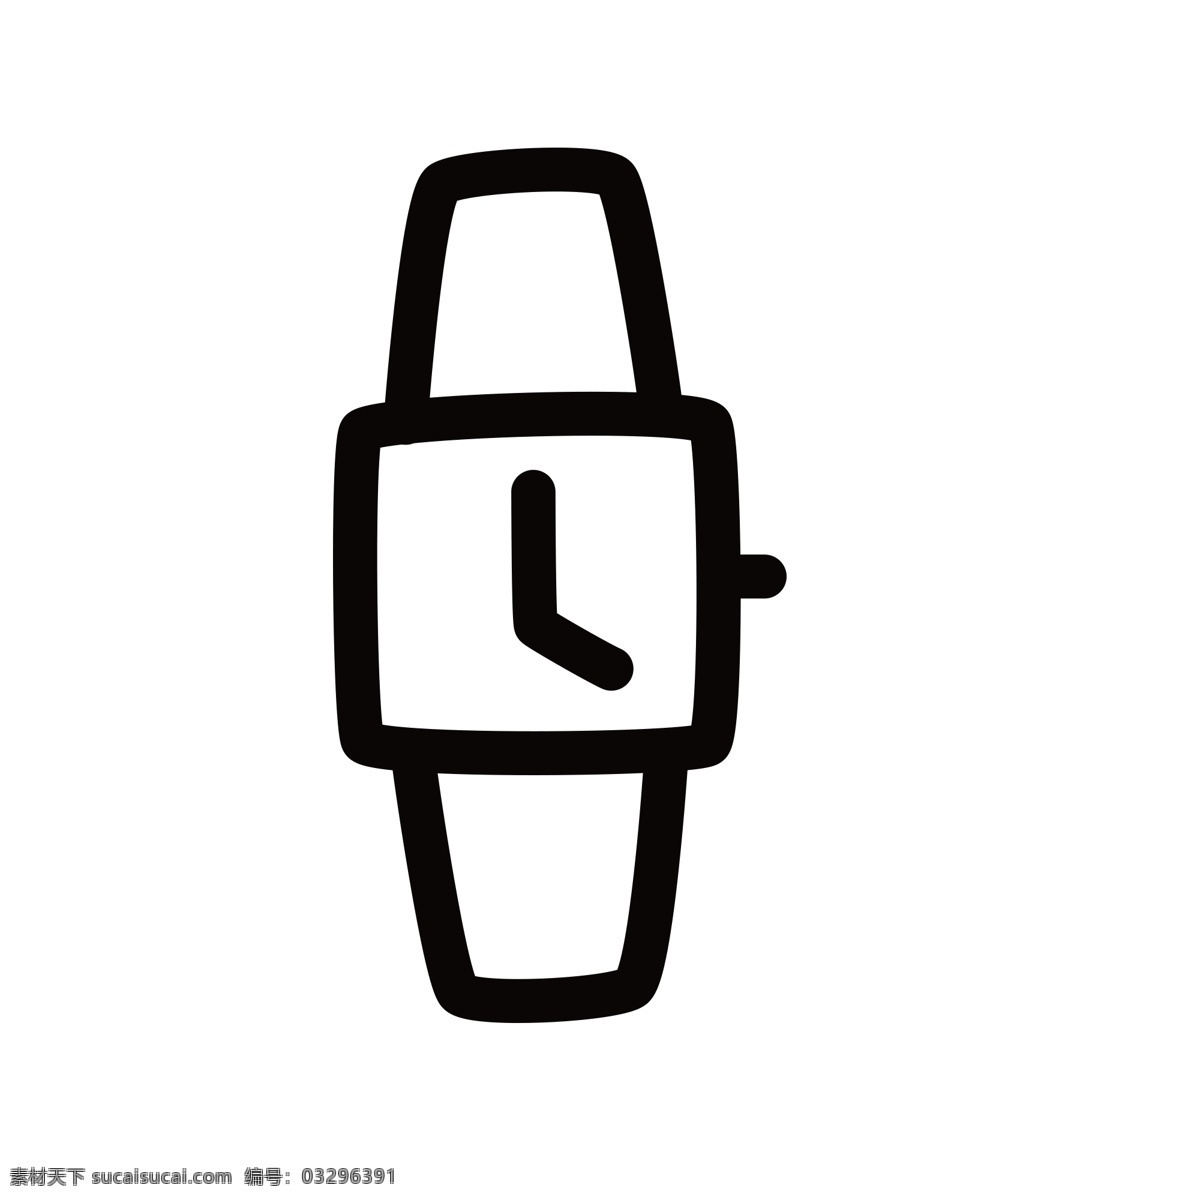 卡通 手表 电子表 手表图标 扁平化ui ui图标 手机图标 游戏ui 界面ui 网页ui h5图标